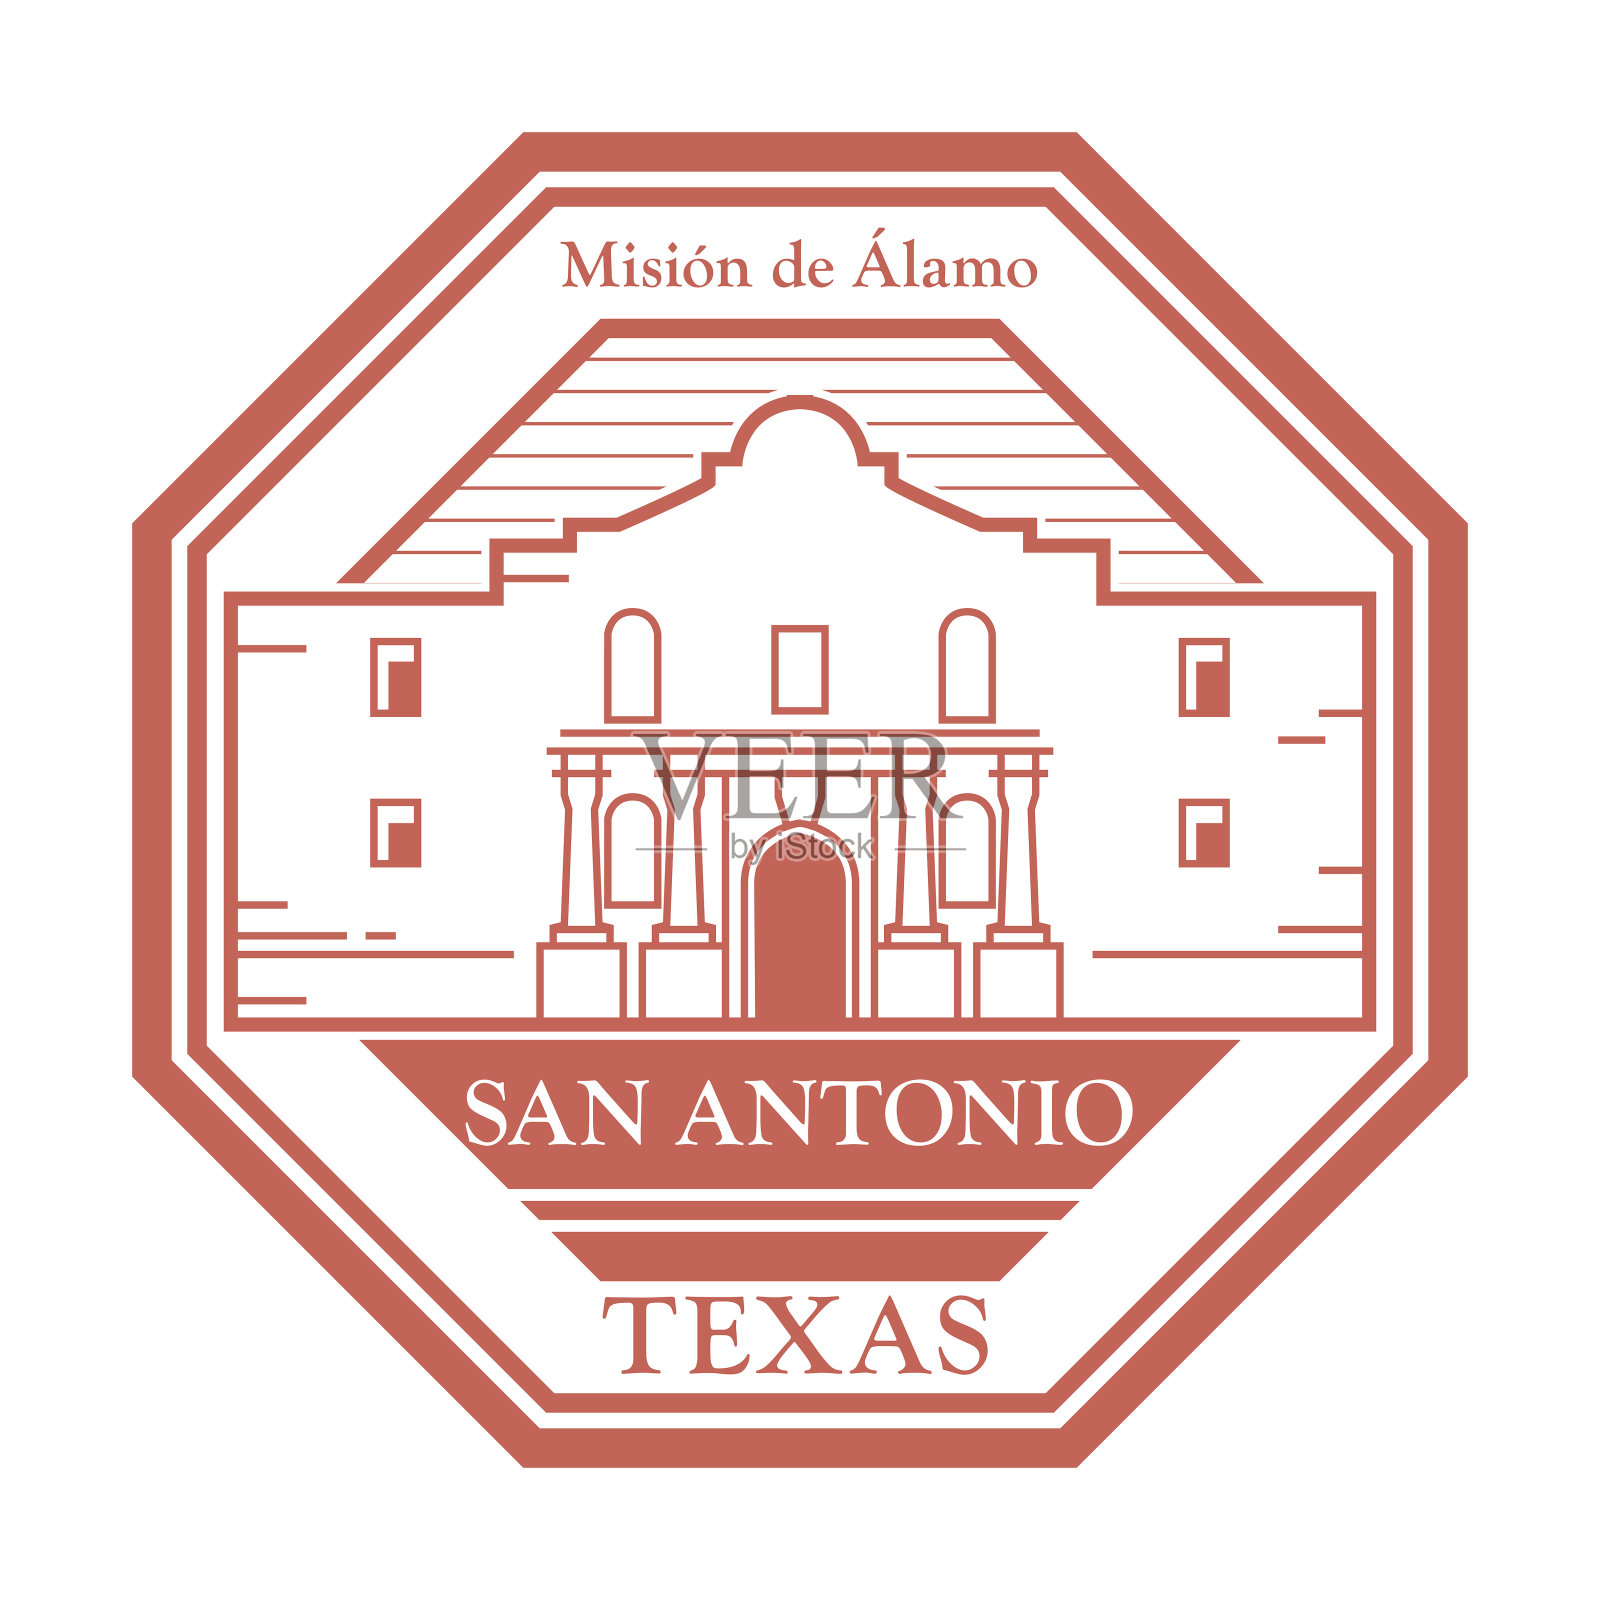 印有德克萨斯州圣安东尼奥阿拉莫使命名称的邮票或标签插画图片素材